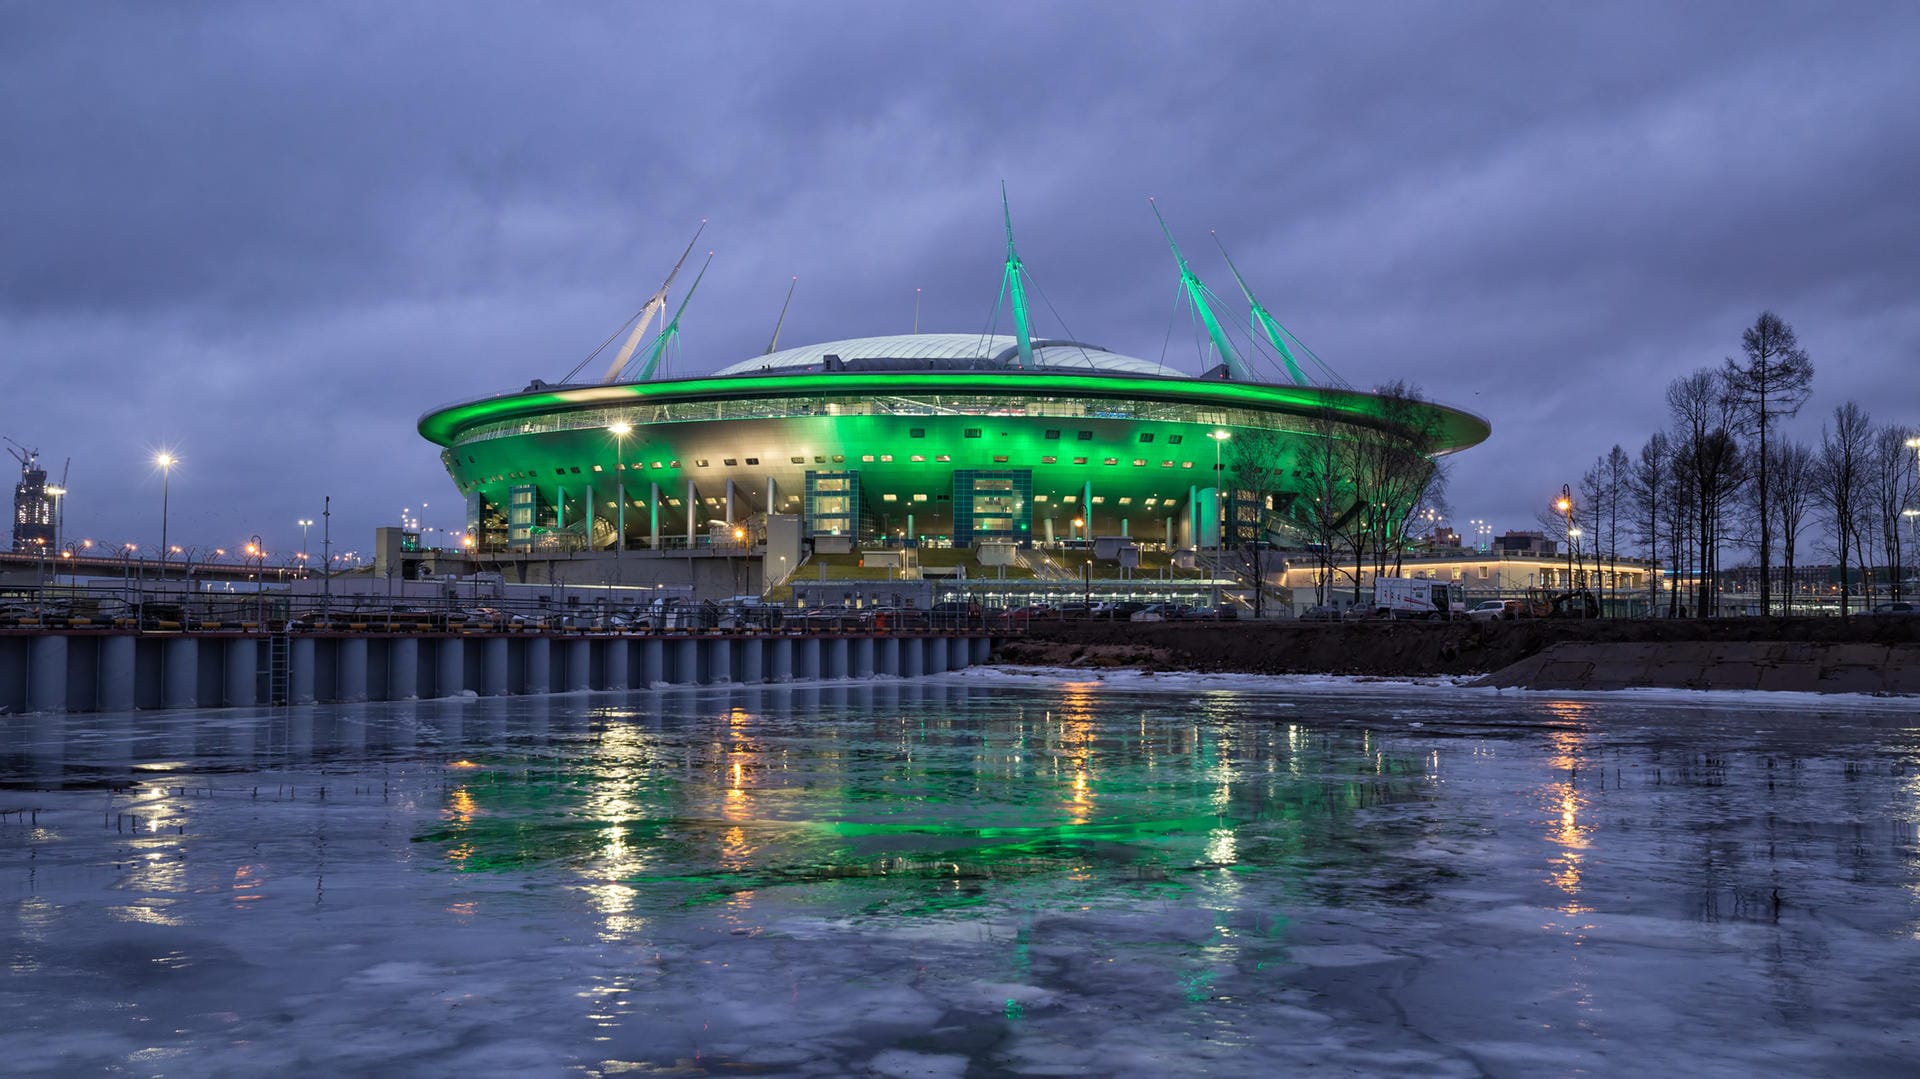 Sankt-Petersburg-Stadion: Die auch als "Krestowskij-Stadion" bekannte Arena wurde extra für die Fußball WM 2018 gebaut.